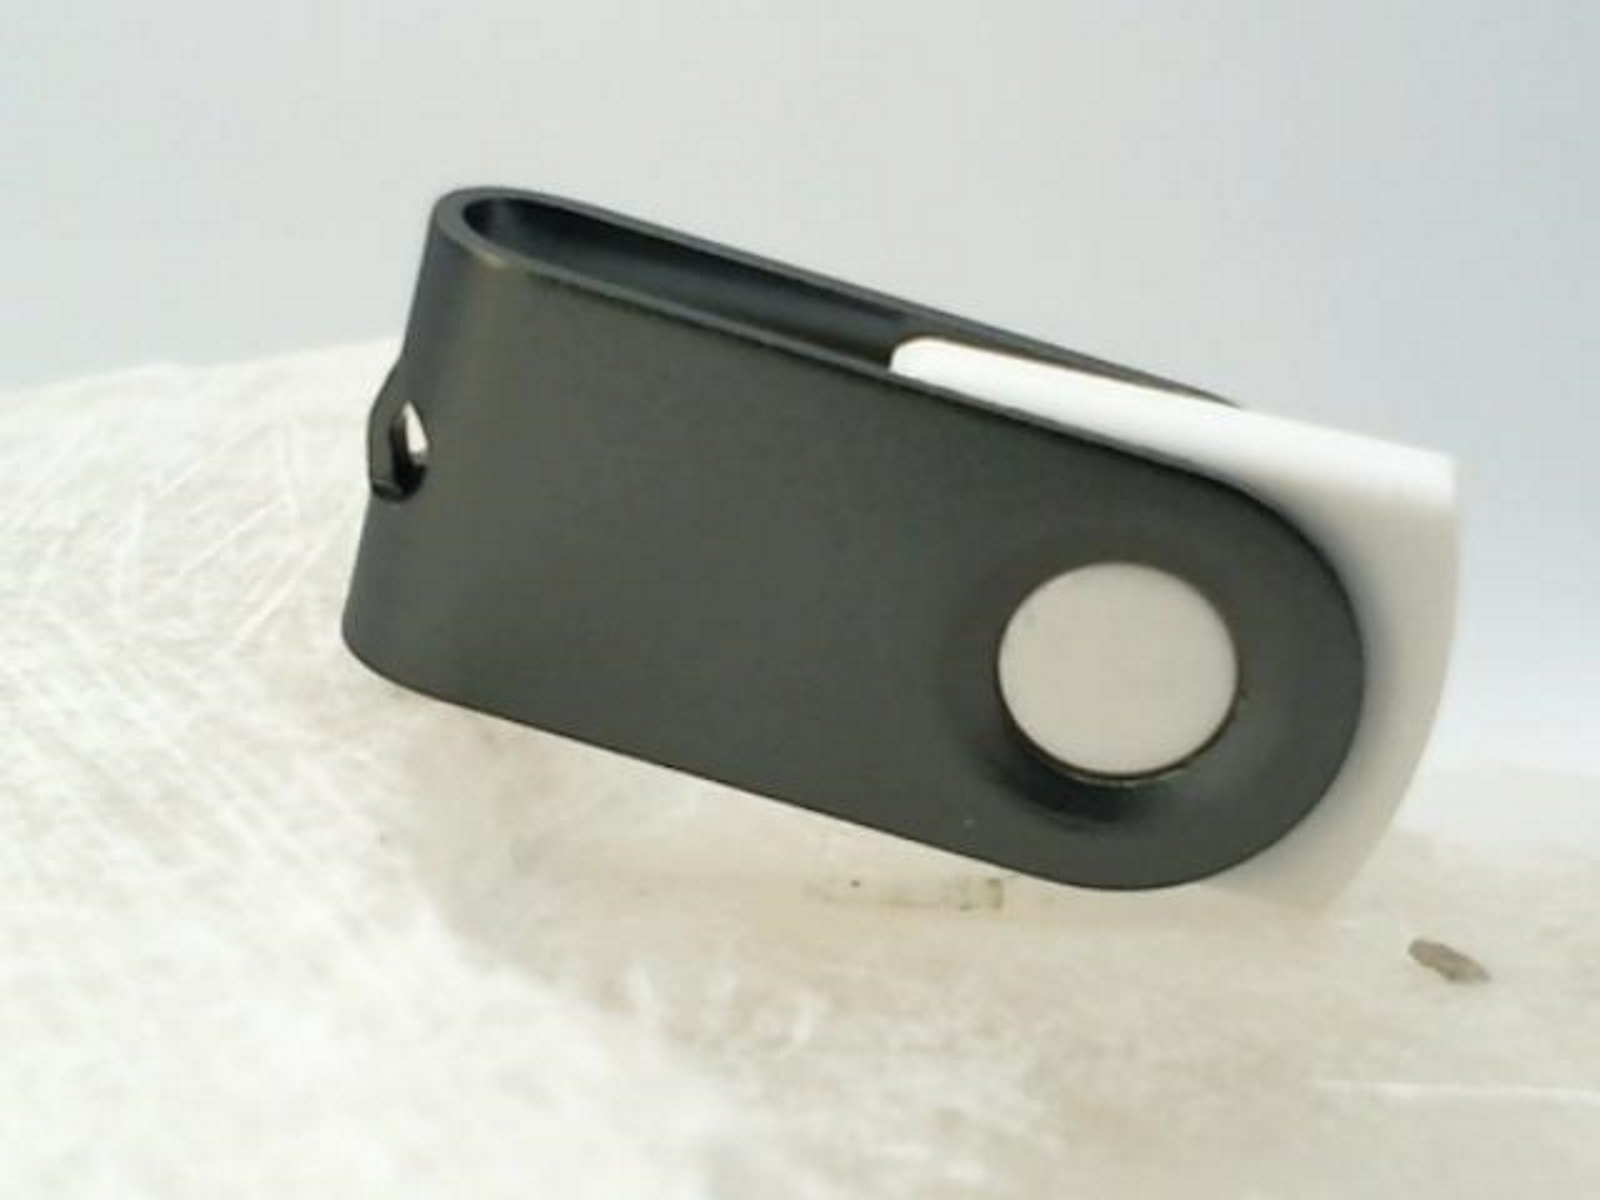 USB GERMANY ® MINI-SWIVEL USB-Stick GB) 32 (Weiß-Graumetall